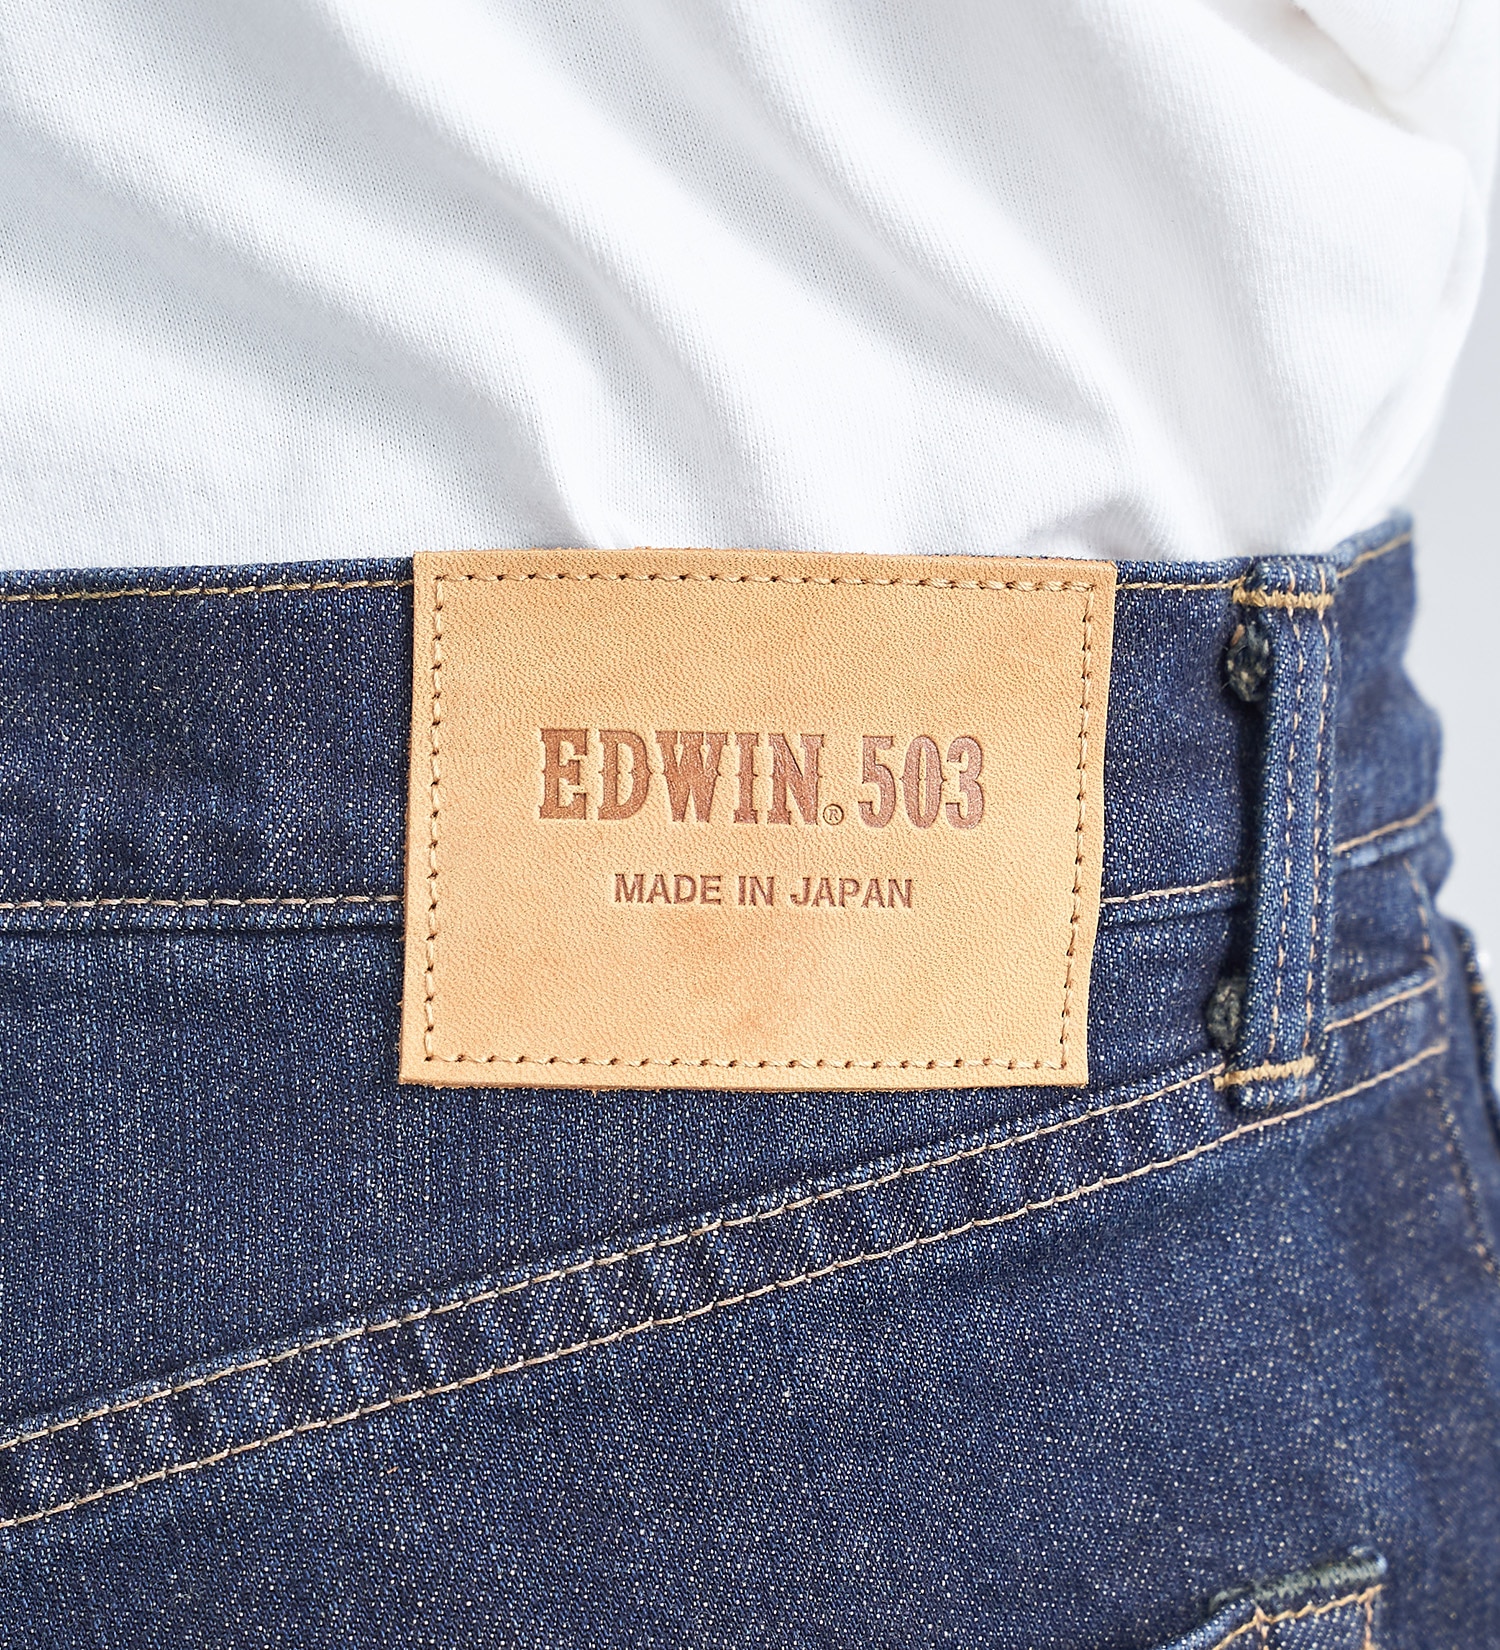 EDWIN(エドウイン)の503 レギュラーストレートパンツ REGULAR STRAIGHT MADE IN JAPAN 日本製|パンツ/デニムパンツ/メンズ|濃色ブルー